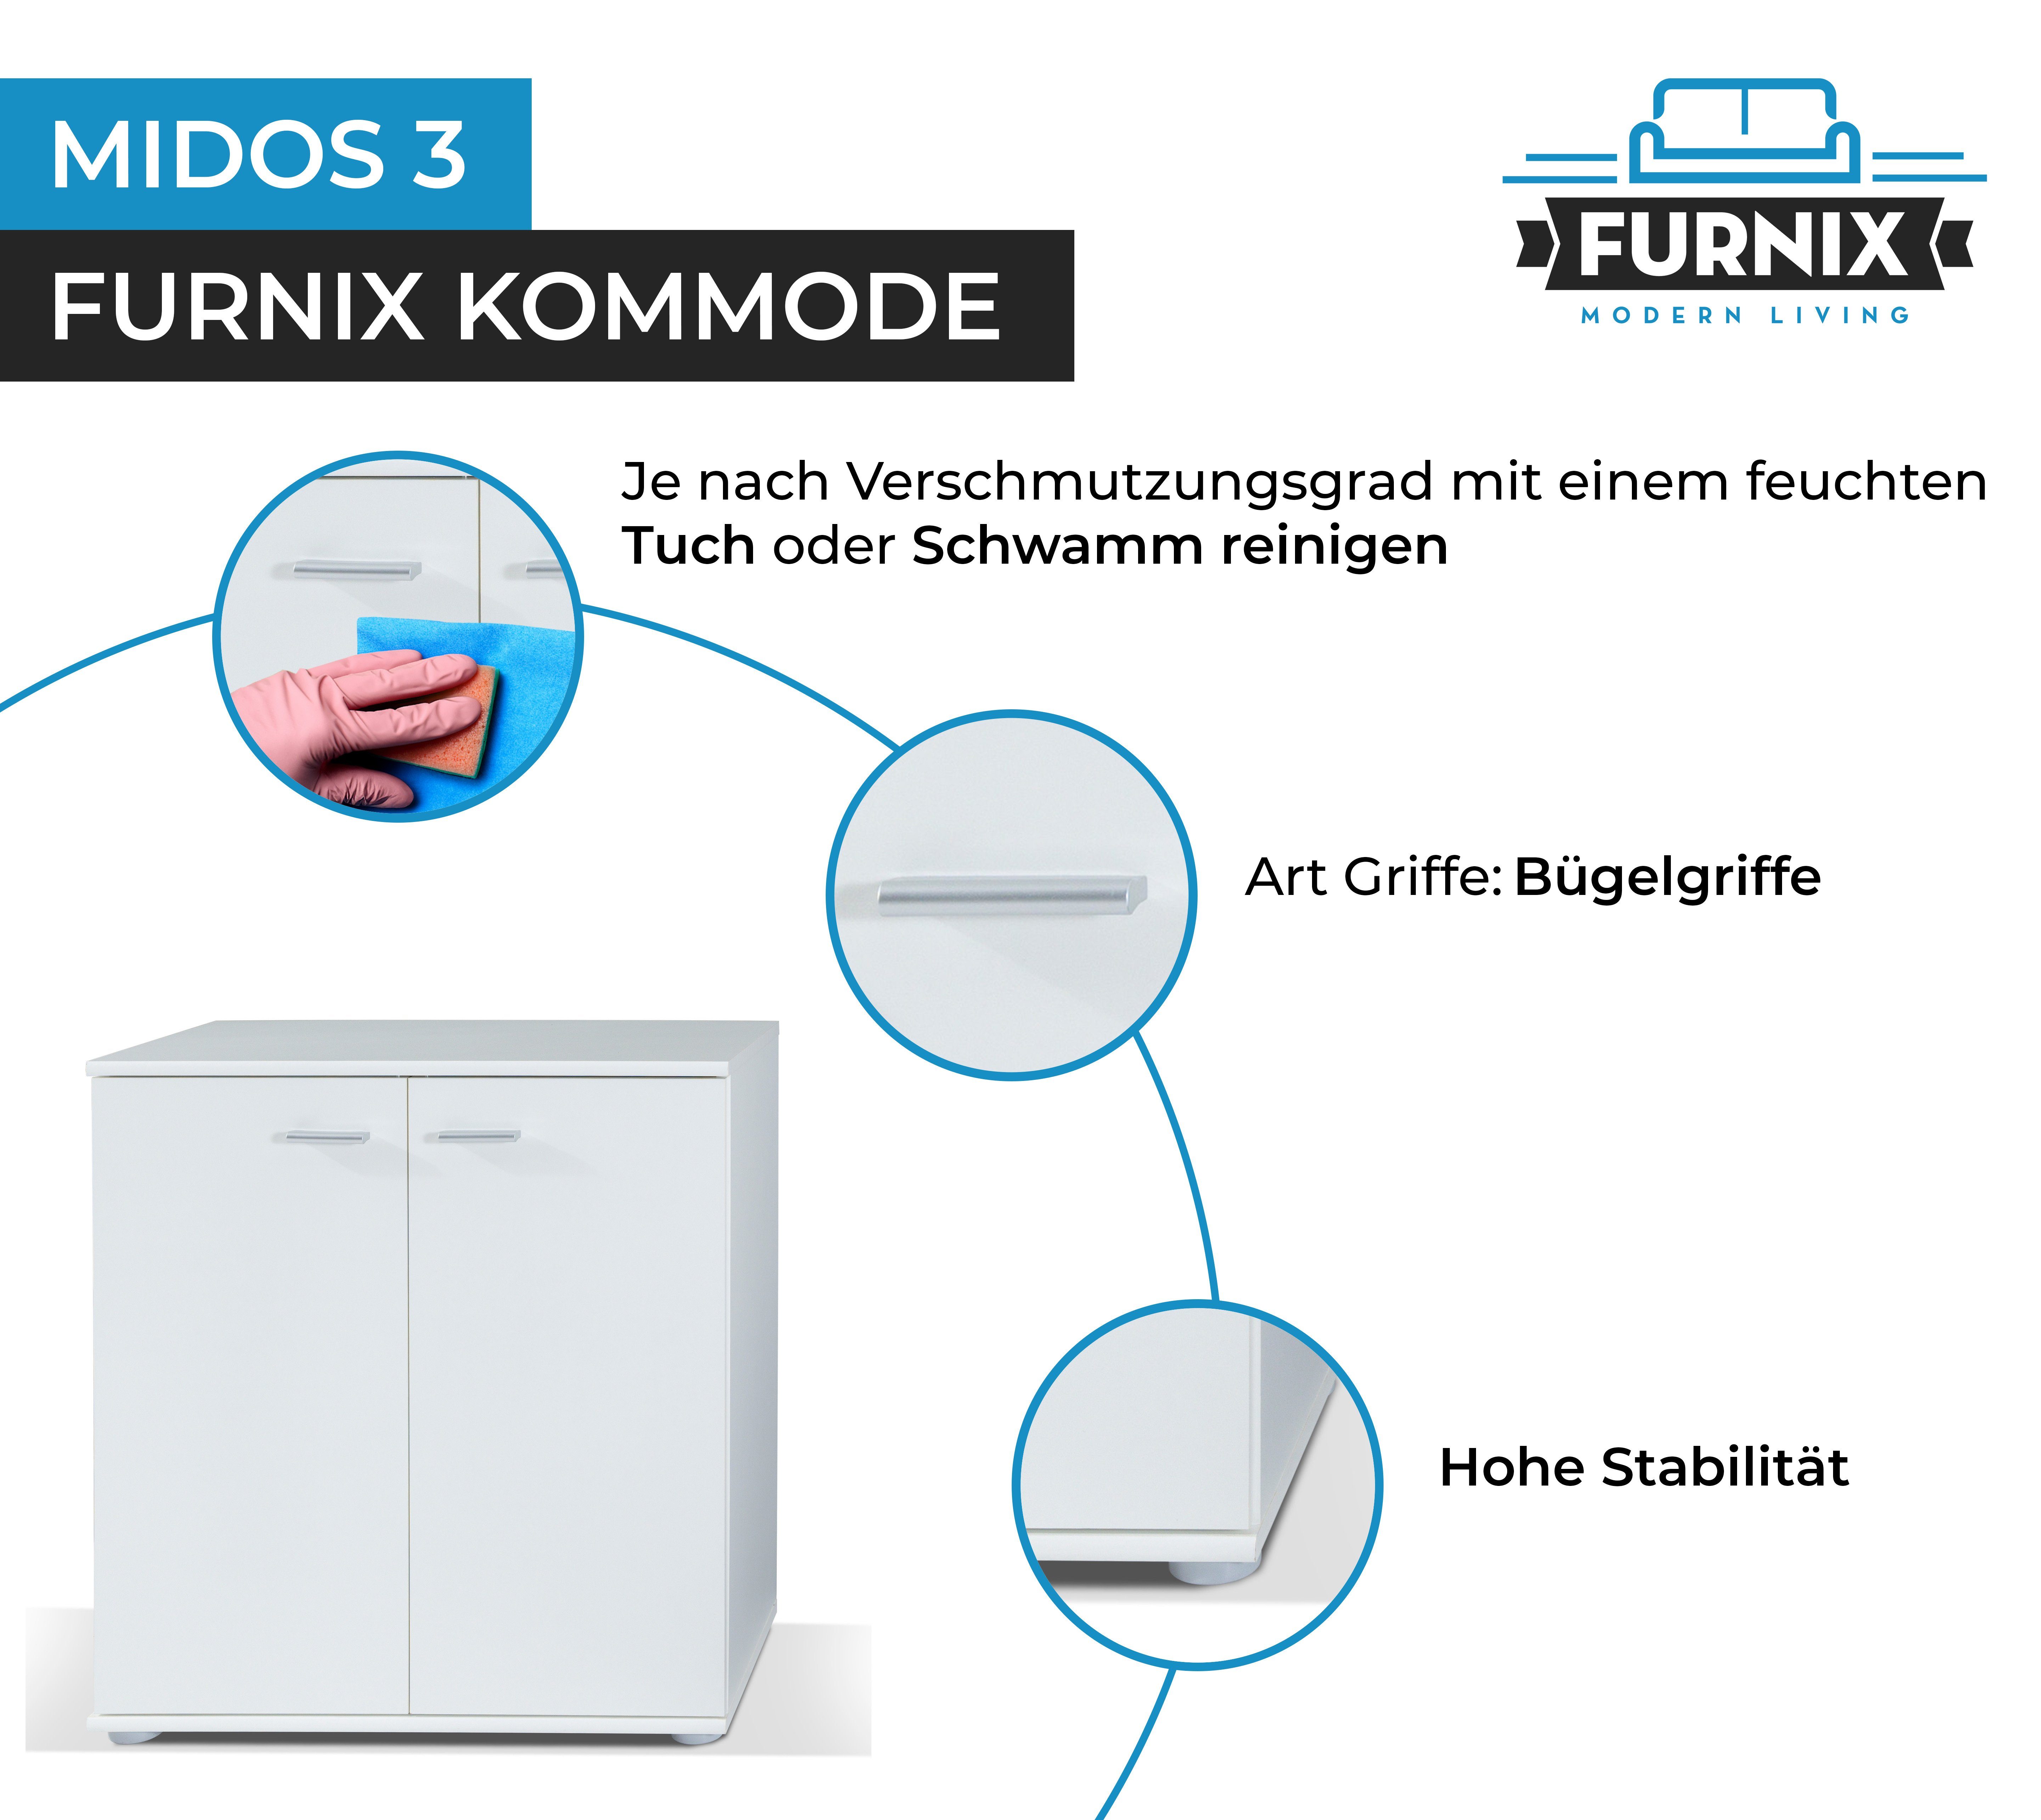 Sideboard Weiß Midos fürs 2 Wohnzimmer modern Kommode 3 mit Türen Furnix